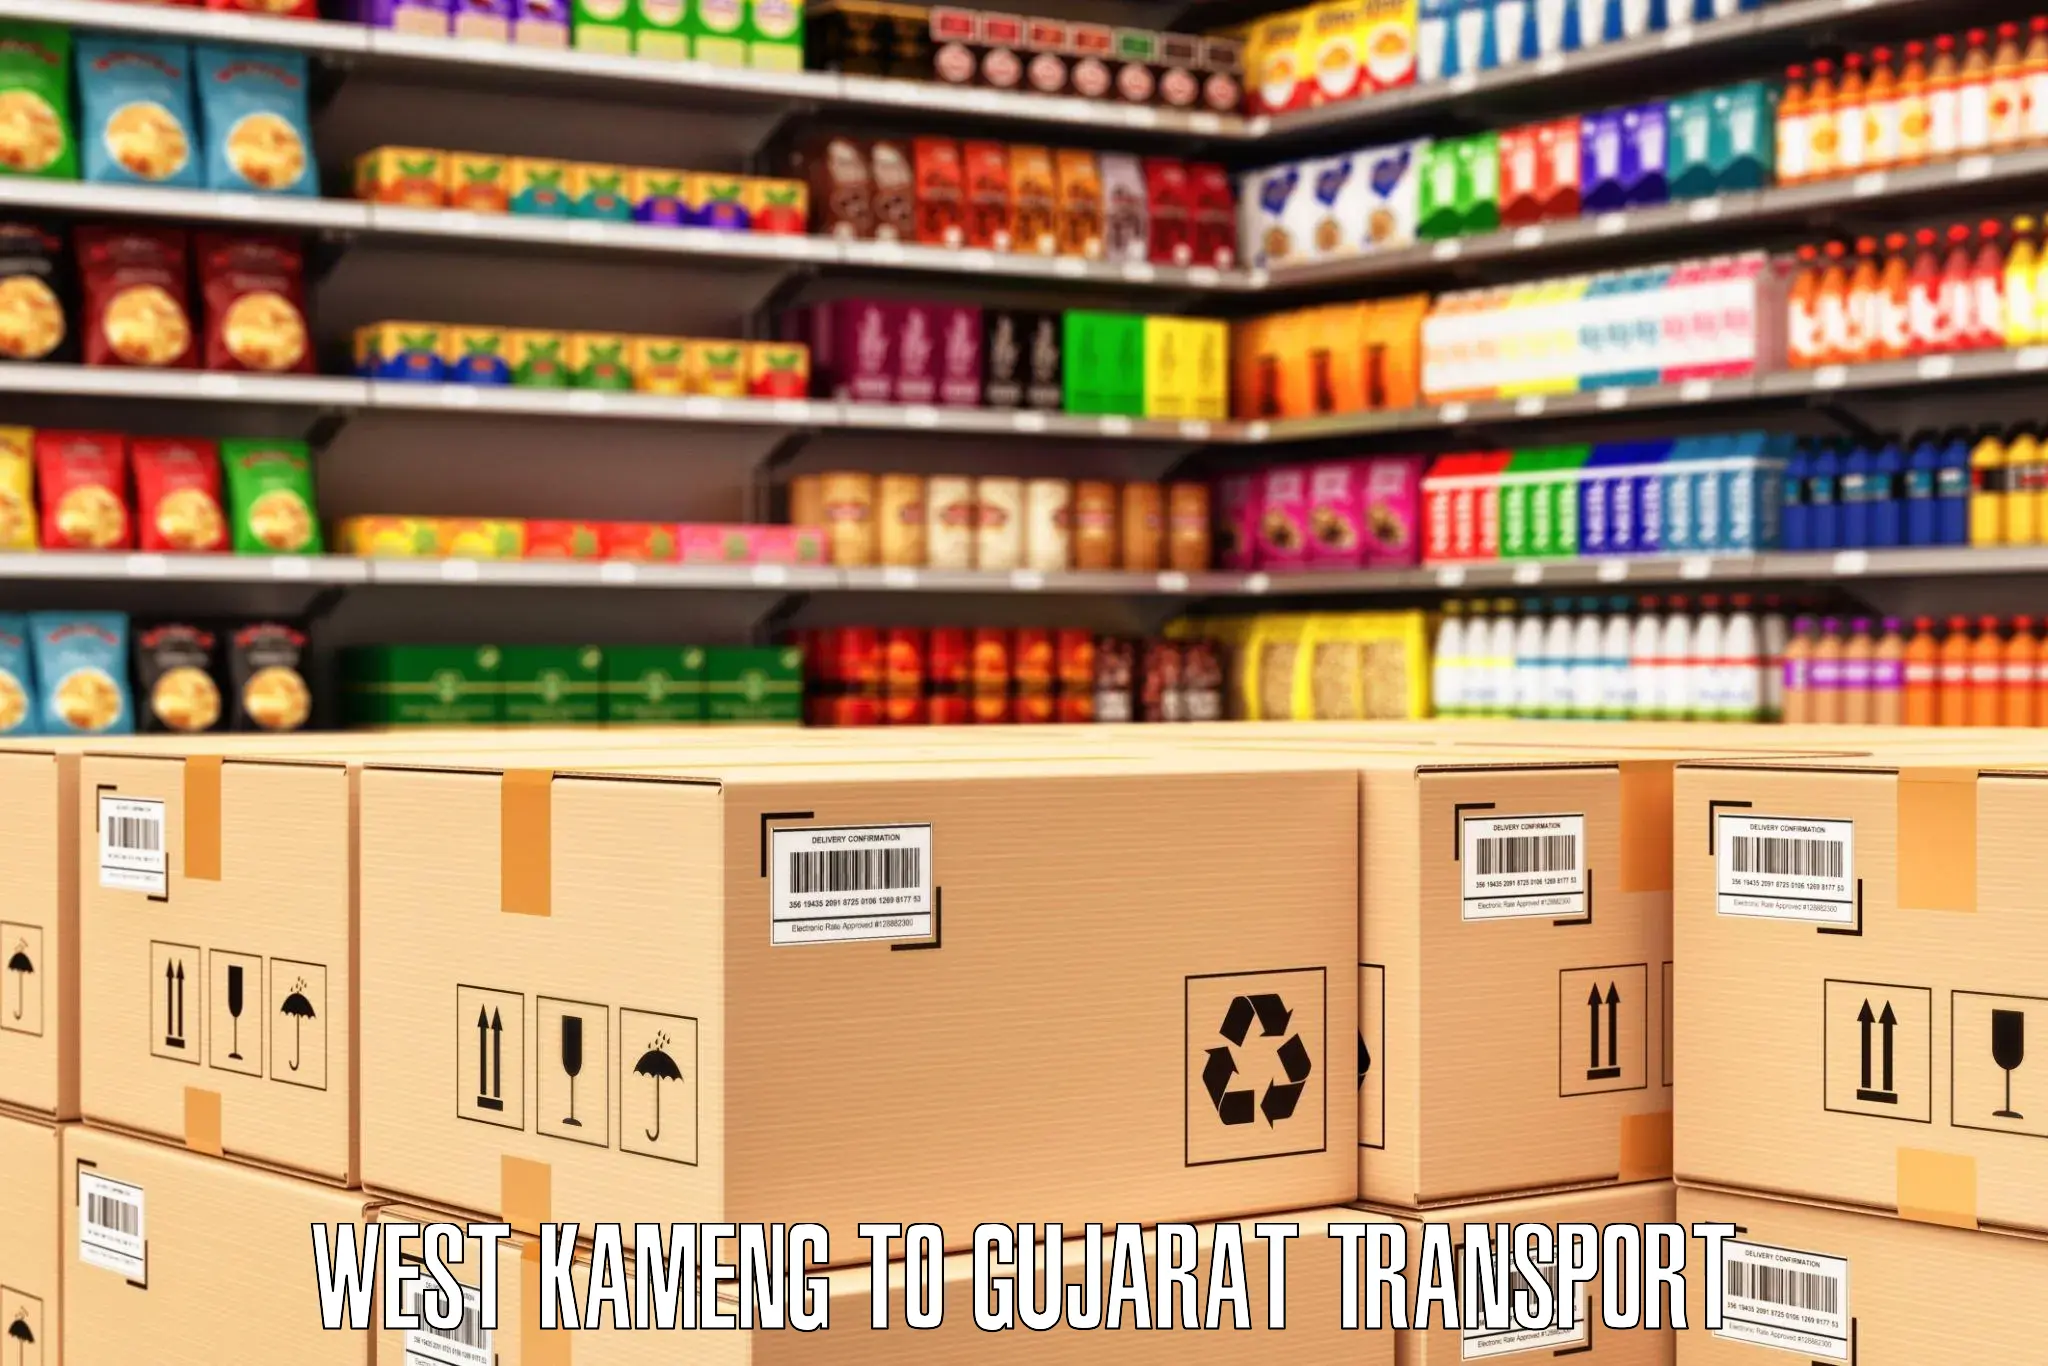 Commercial transport service West Kameng to Gondal